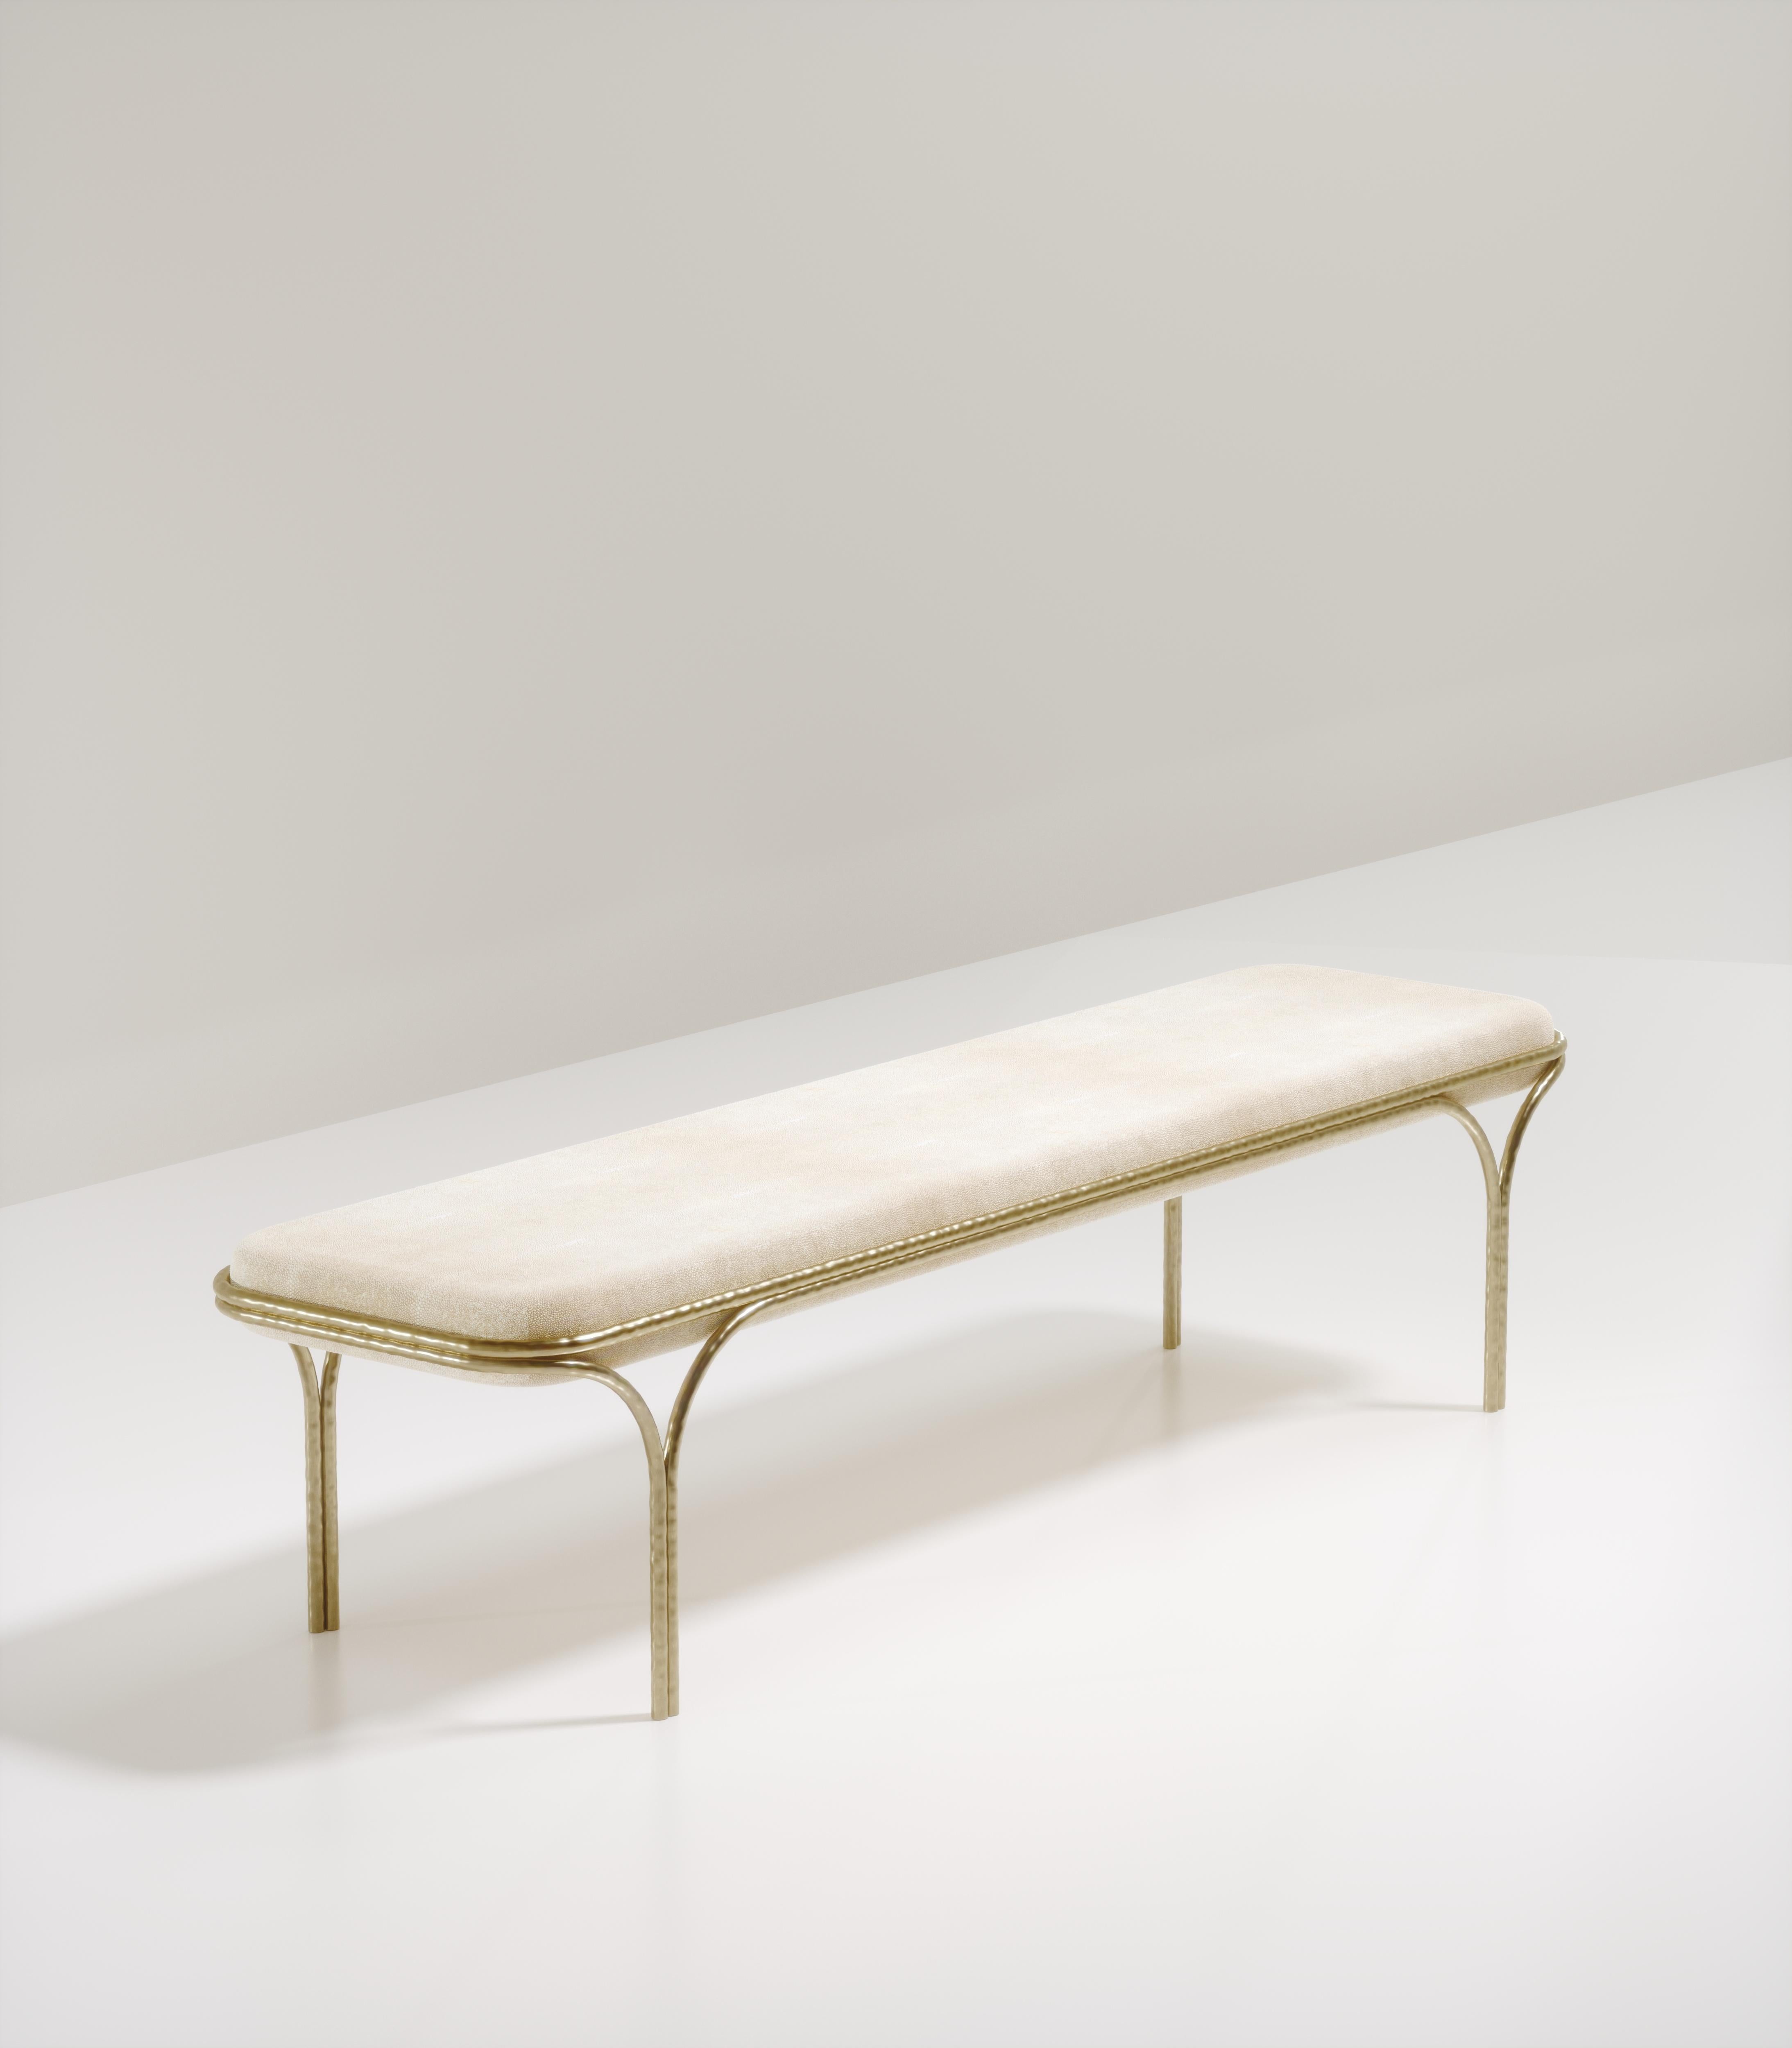 Le banc Arianne de R&Y Augousti est une pièce élégante pour tout espace. L'assise en galuchat crème, aux bords incurvés, repose sur une structure organique en bronze-patine. Le cadre et les pieds complexes ont un effet de 